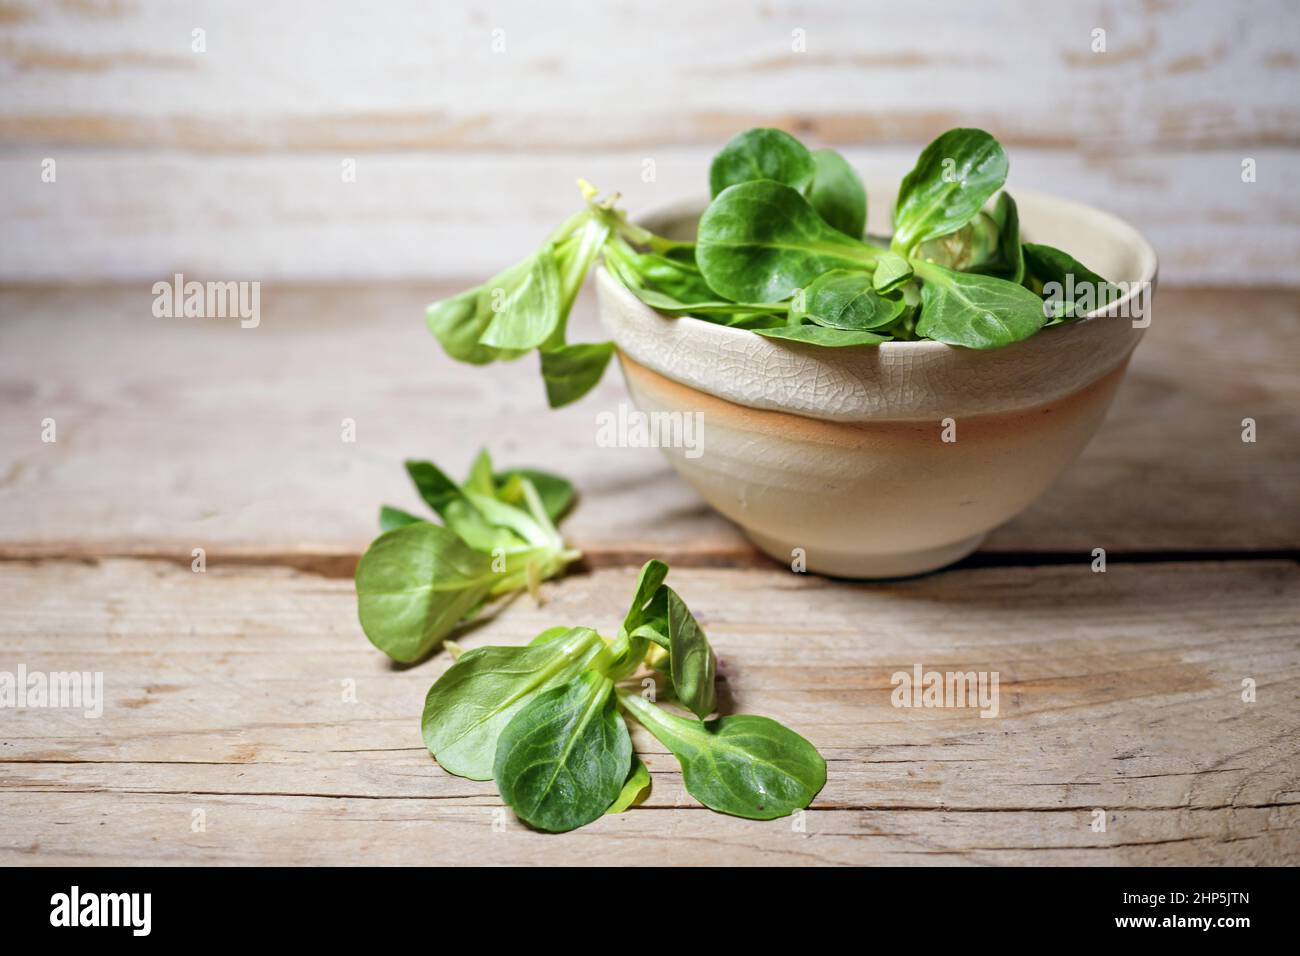 Bio-Maissalat oder Lammsalat in einer Schüssel auf einem rustikalen Holztisch, Kopierraum, ausgewählter Fokus, enge Schärfentiefe Stockfoto